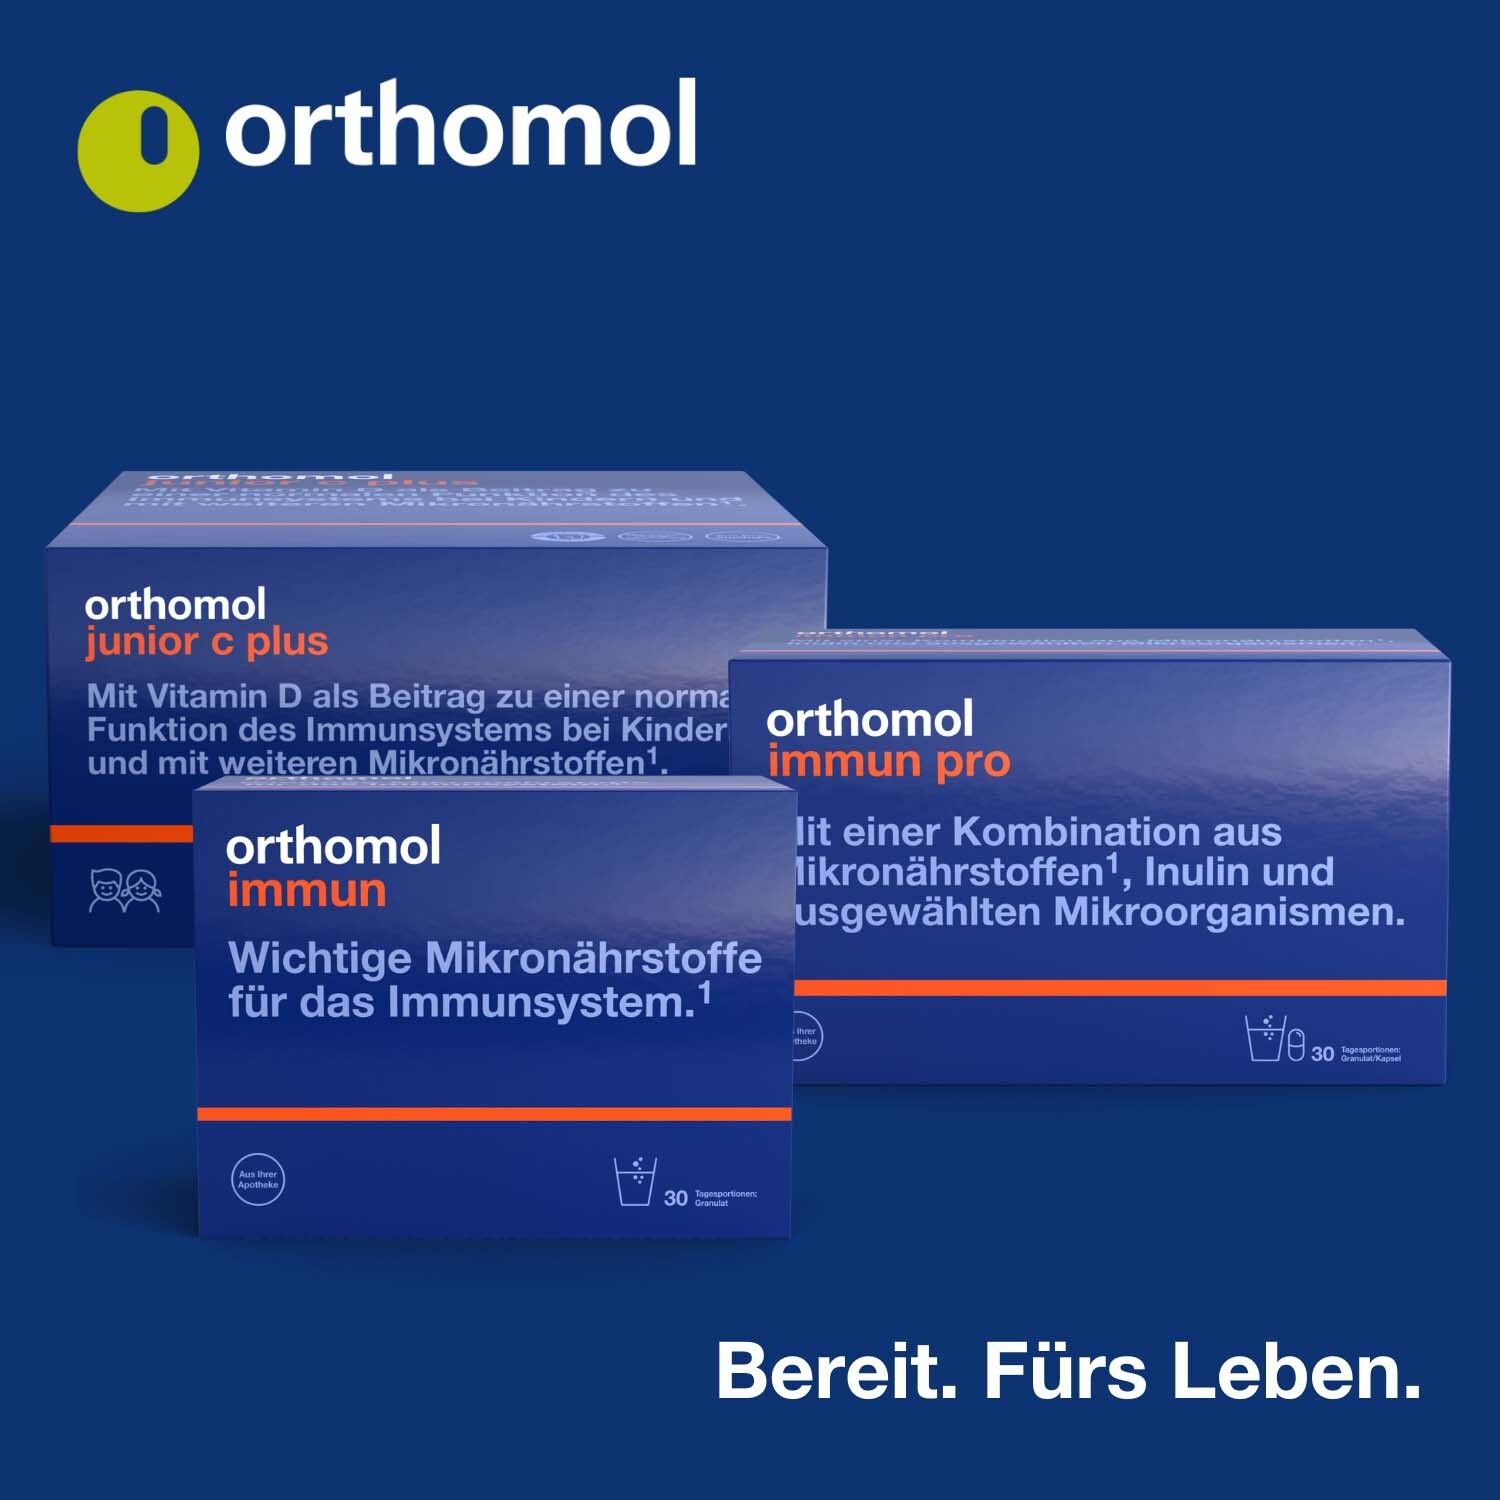 Orthomol Vitamin C depo - Nahrungsergänzungsmittel mit Depot-Wirkung für eine normale Funktion des Immunsystems - Tabletten